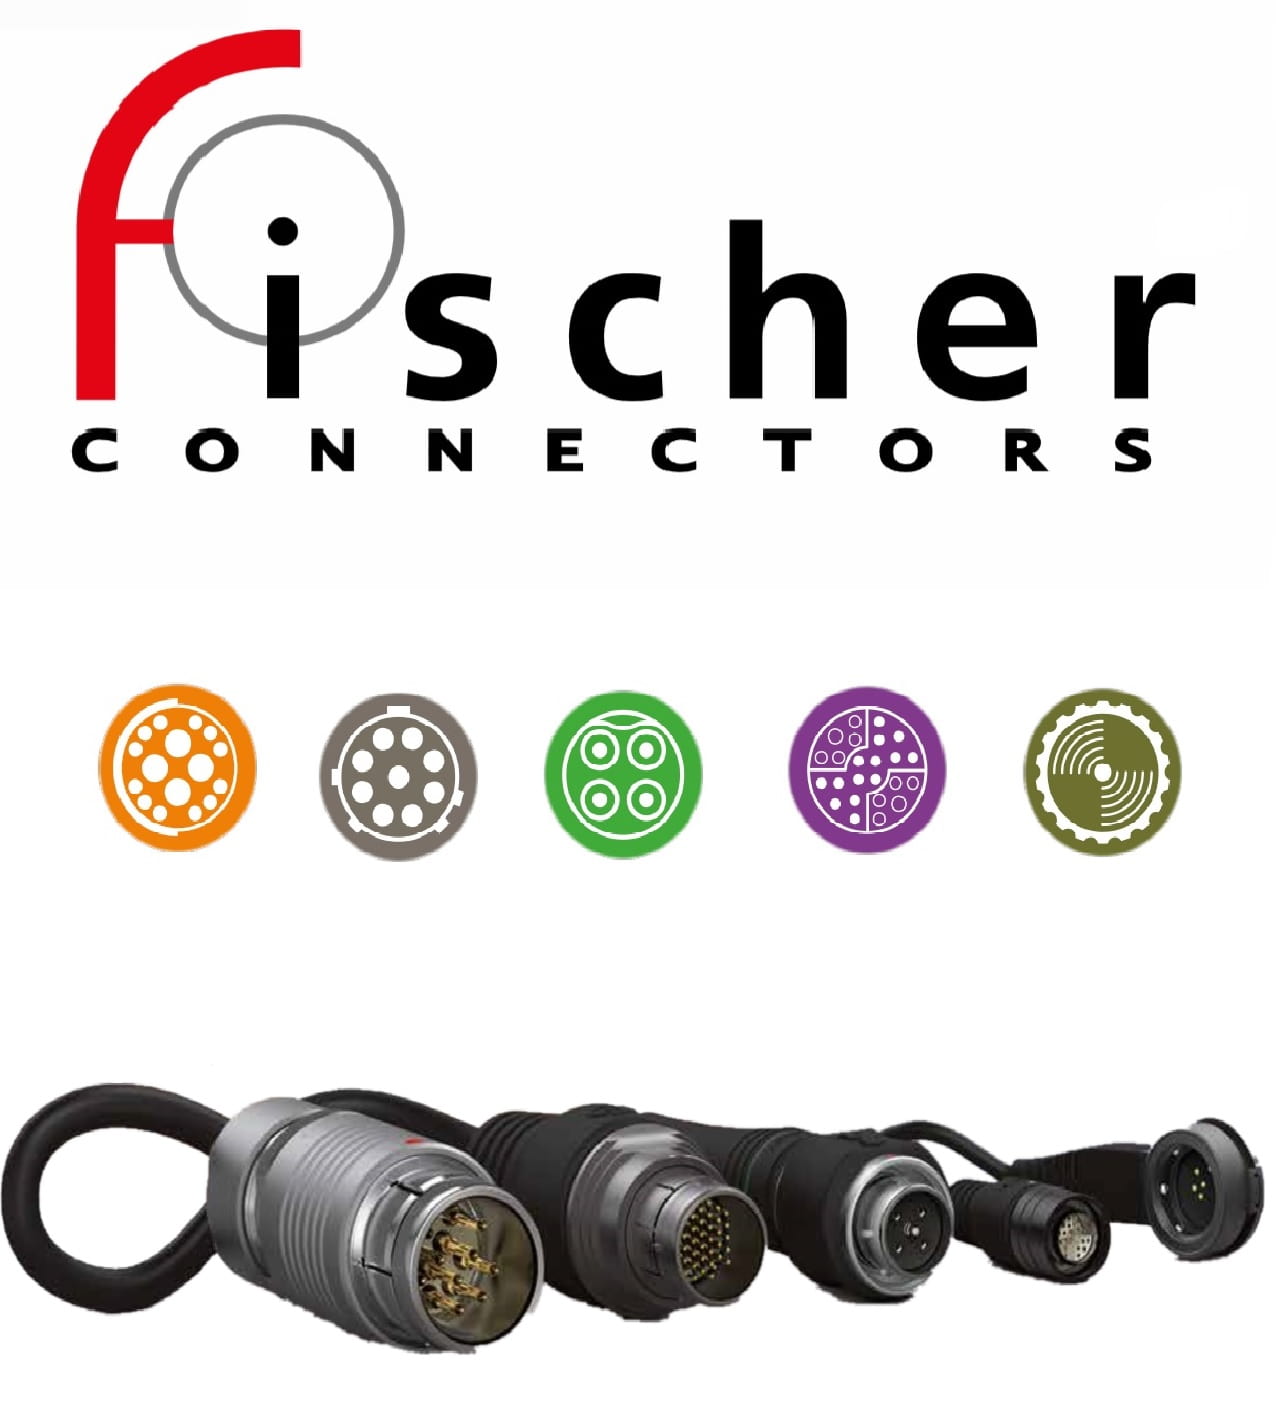 Fischer connectors логотип